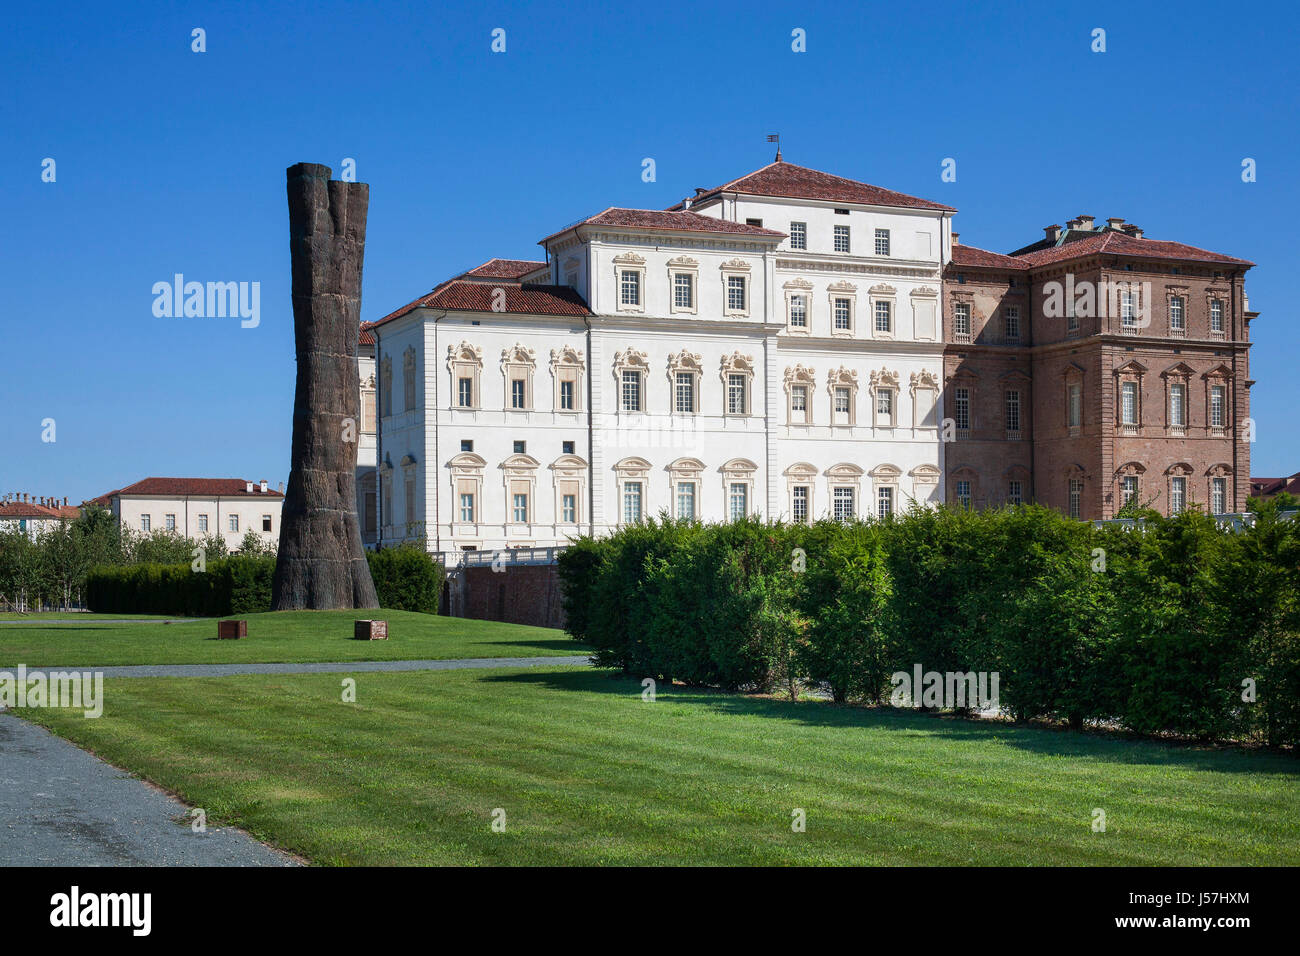 Königshaus von Residenzen des Hauses Savoyen, Venaria Reale, Turin, Italien Stockfoto